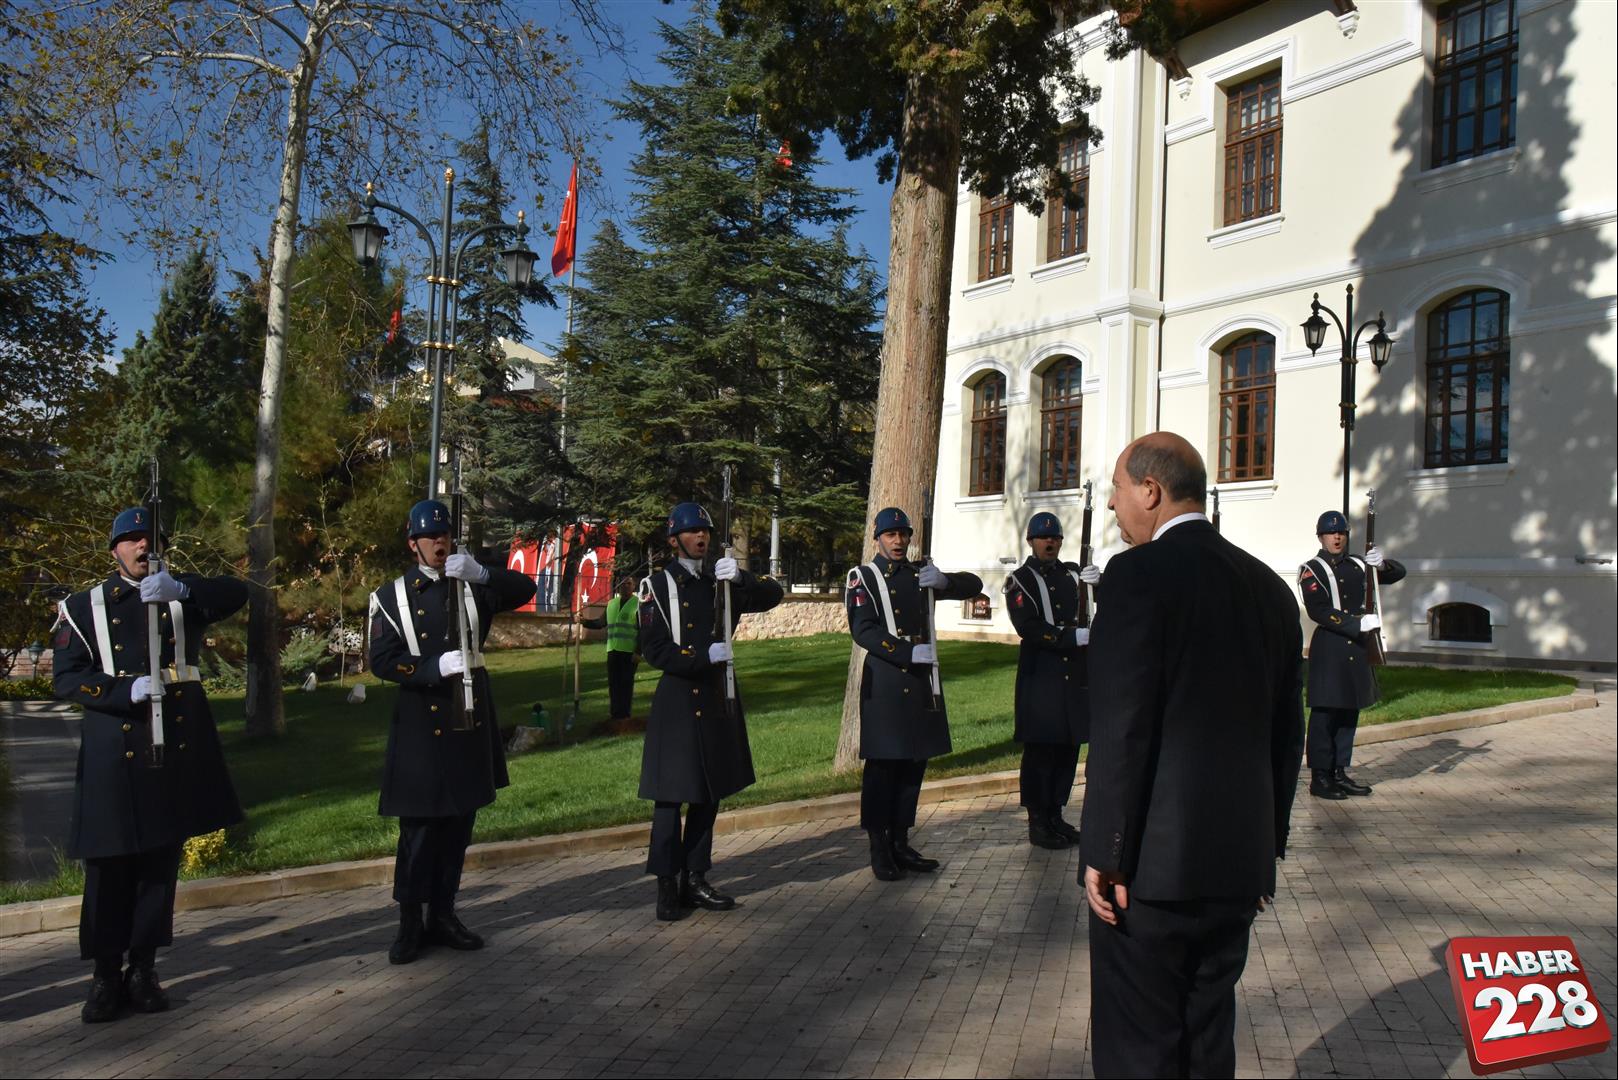 KKTC Cumhurbaşkanı Ersin Tatar, Bilecik'te